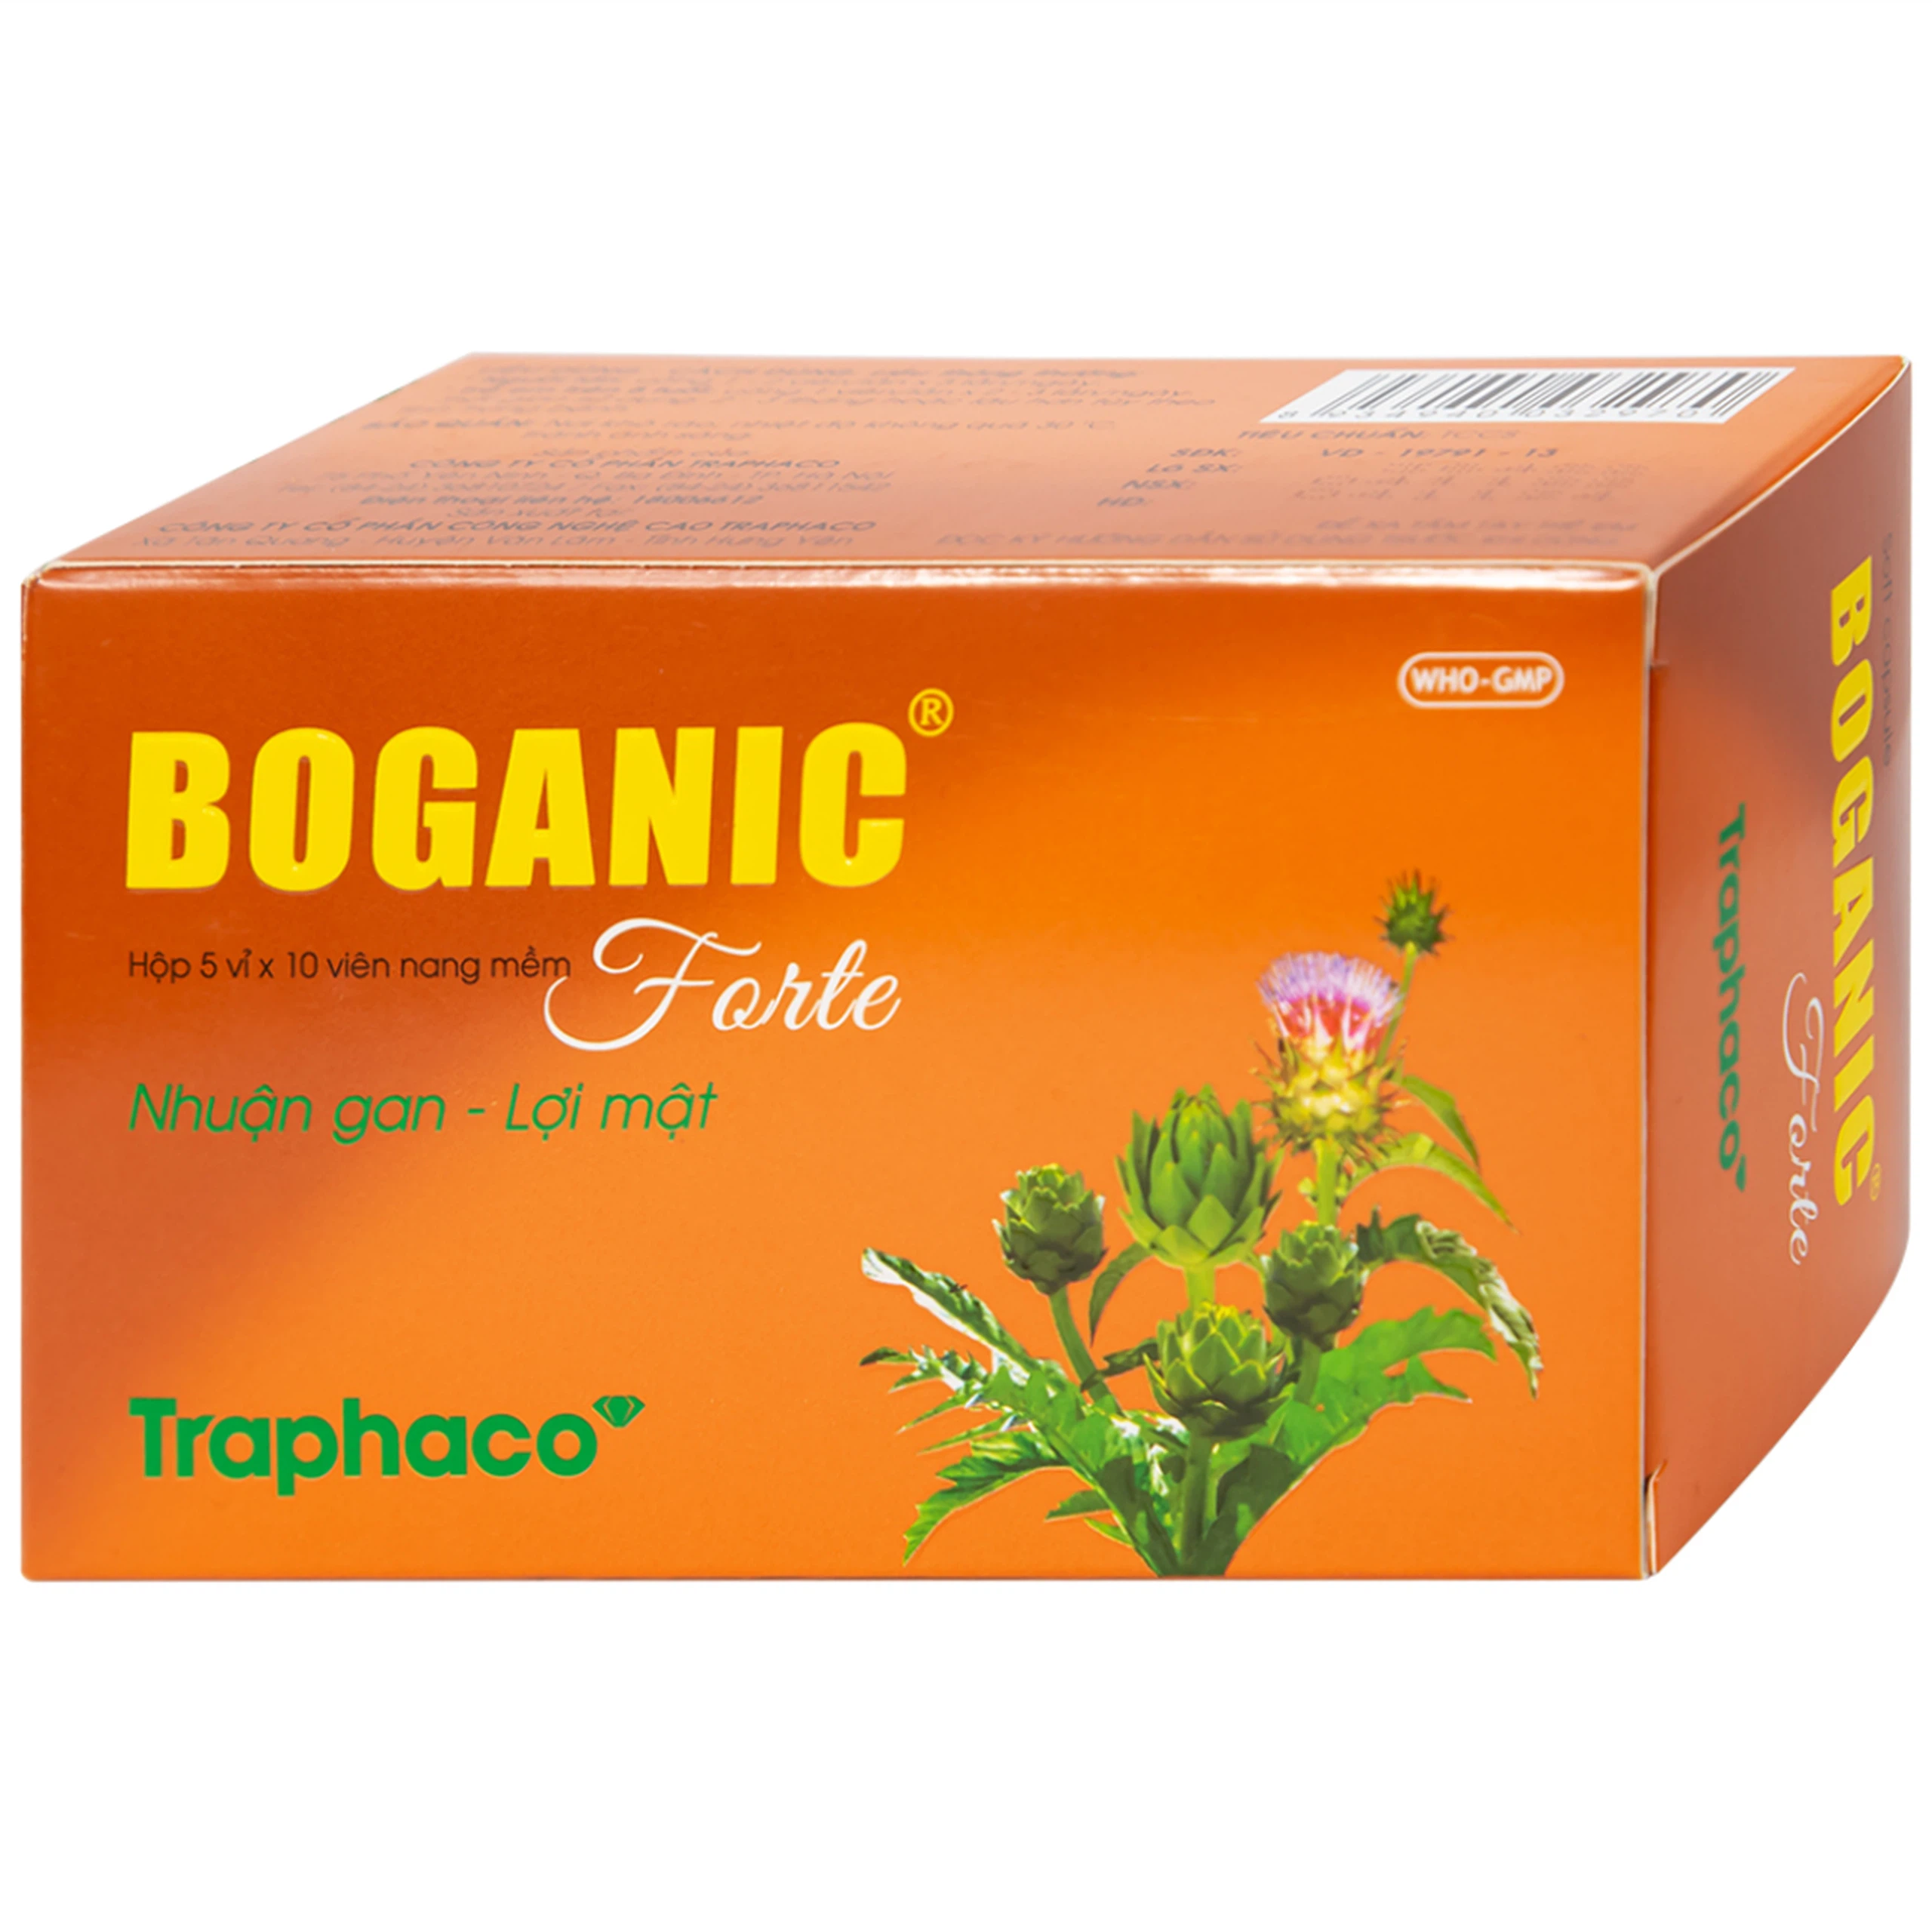 Thuốc Boganic Forte Traphaco bổ gan, hỗ trợ điều trị suy giảm chức năng gan (5 vỉ x 10 viên)